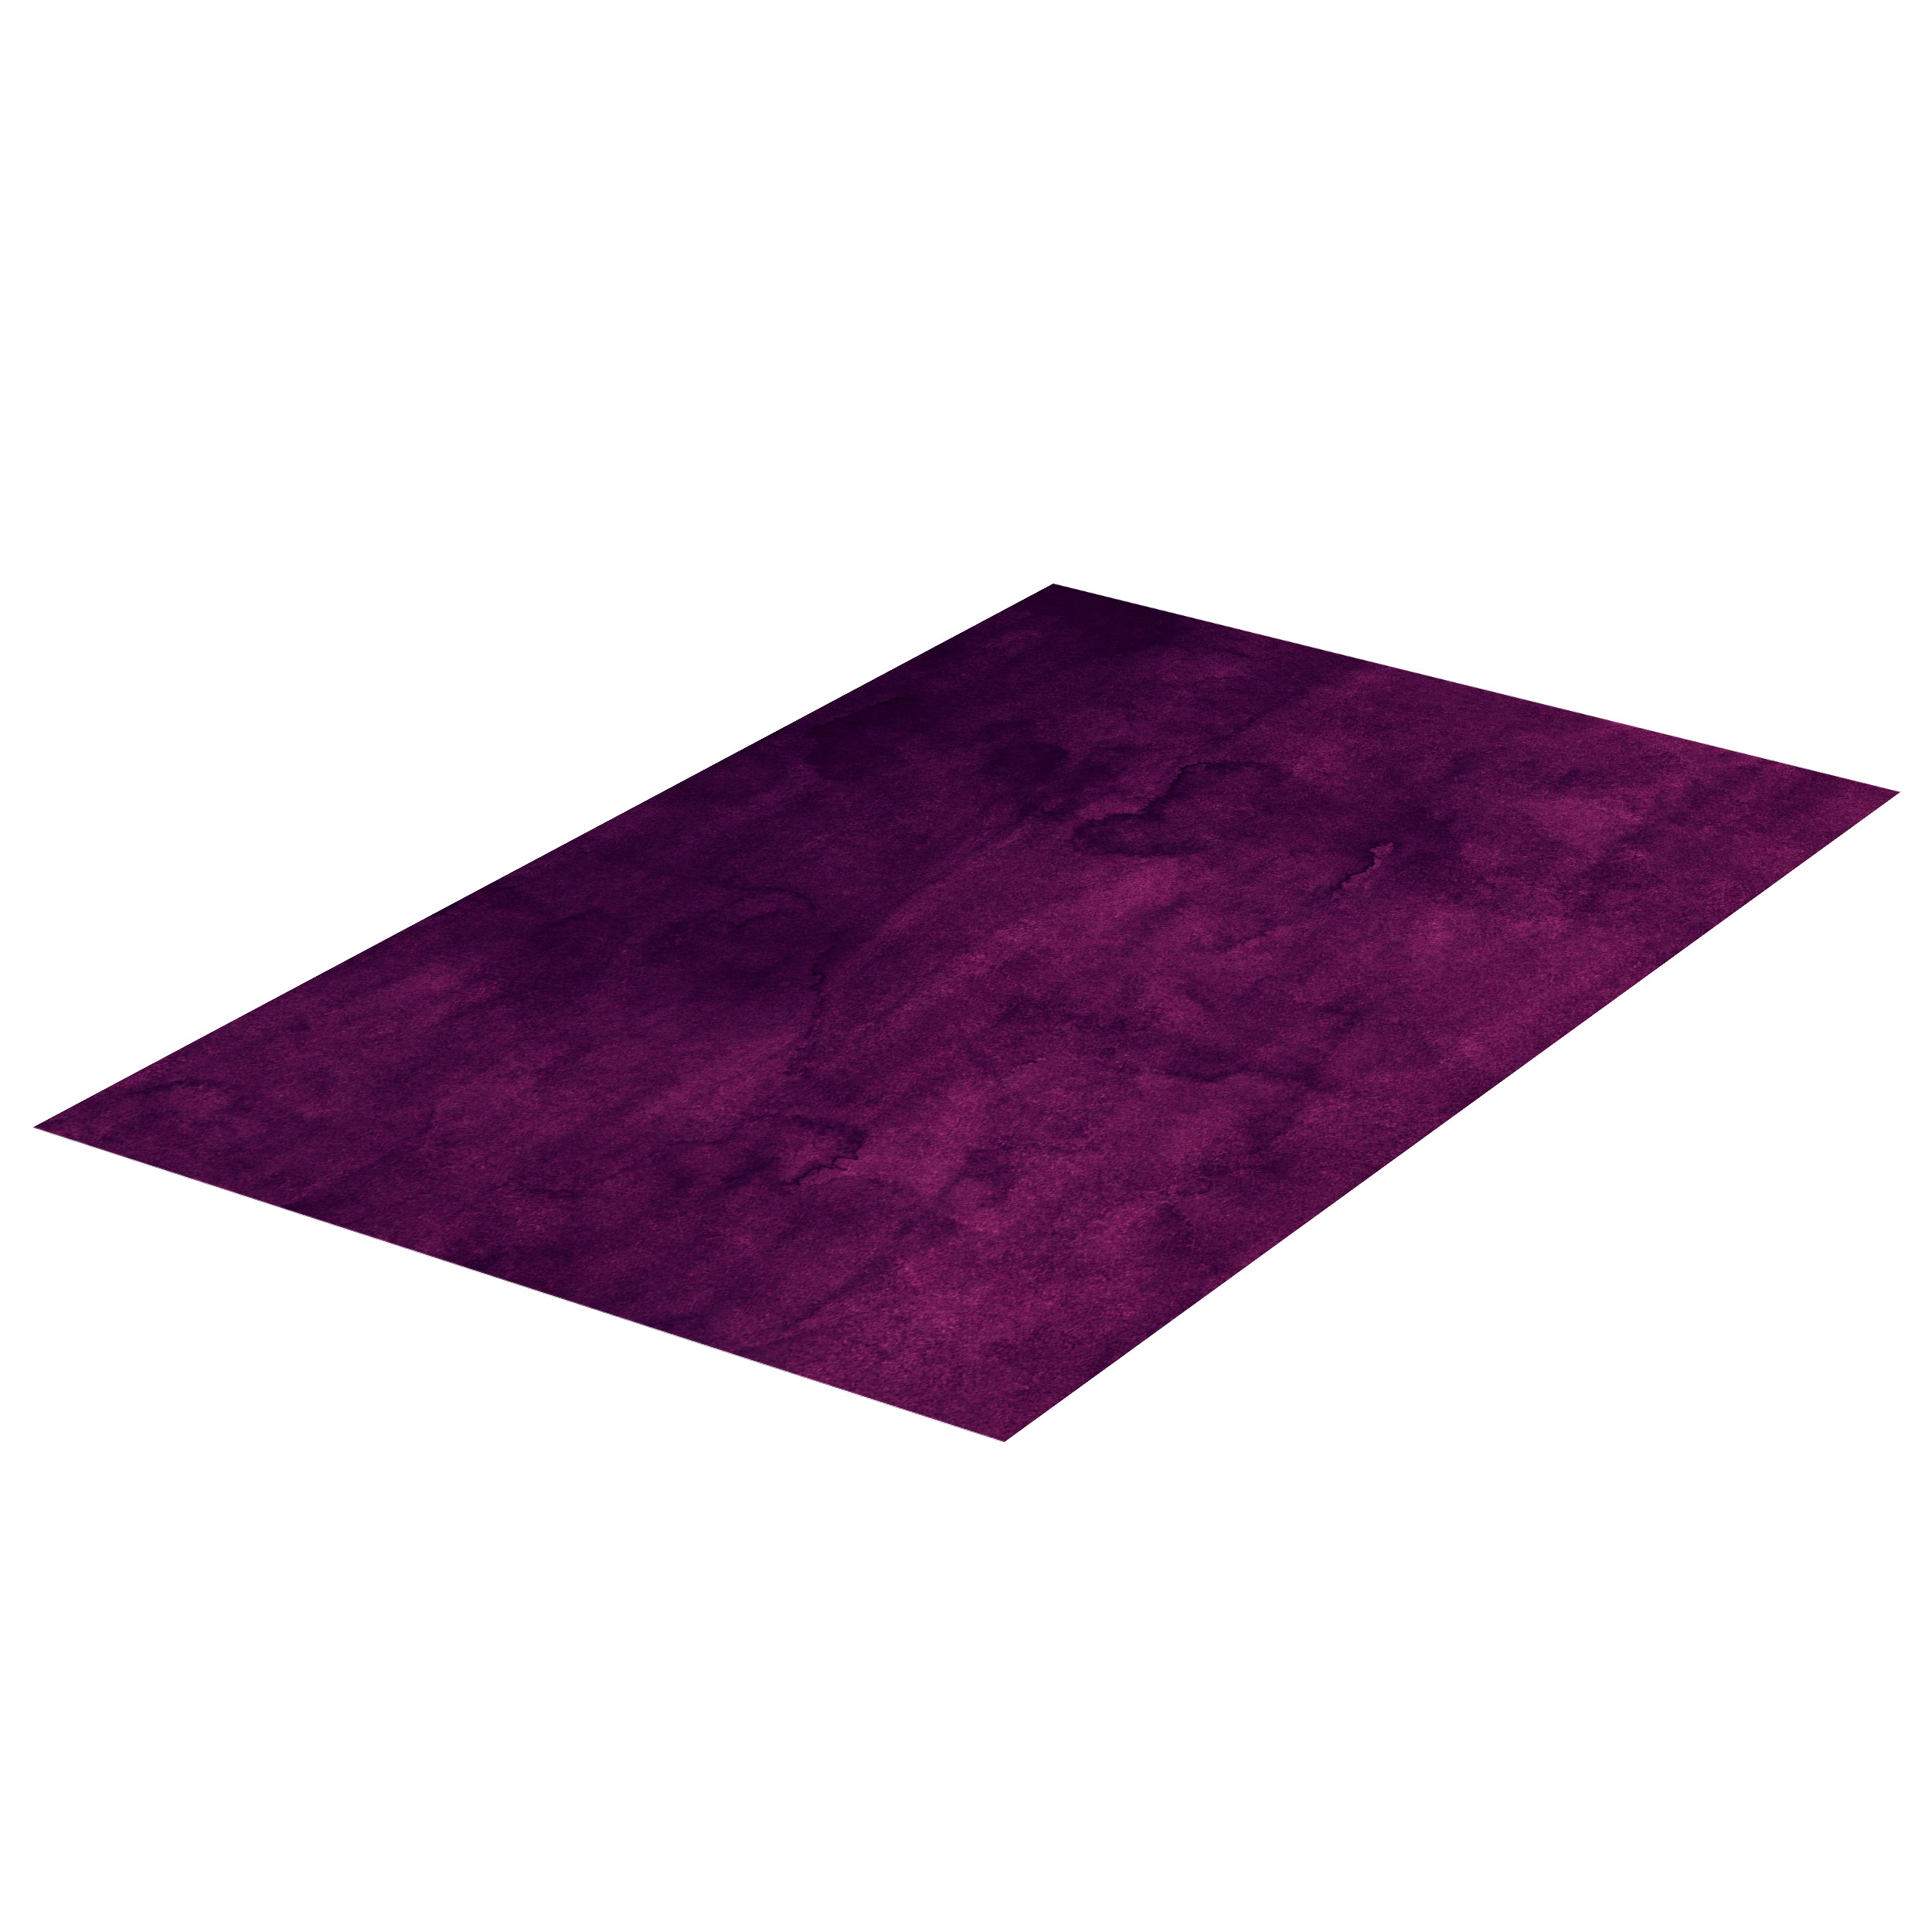 BRESSER Vinyl Backdrop 60 x 90 cm Structure Dark Purple